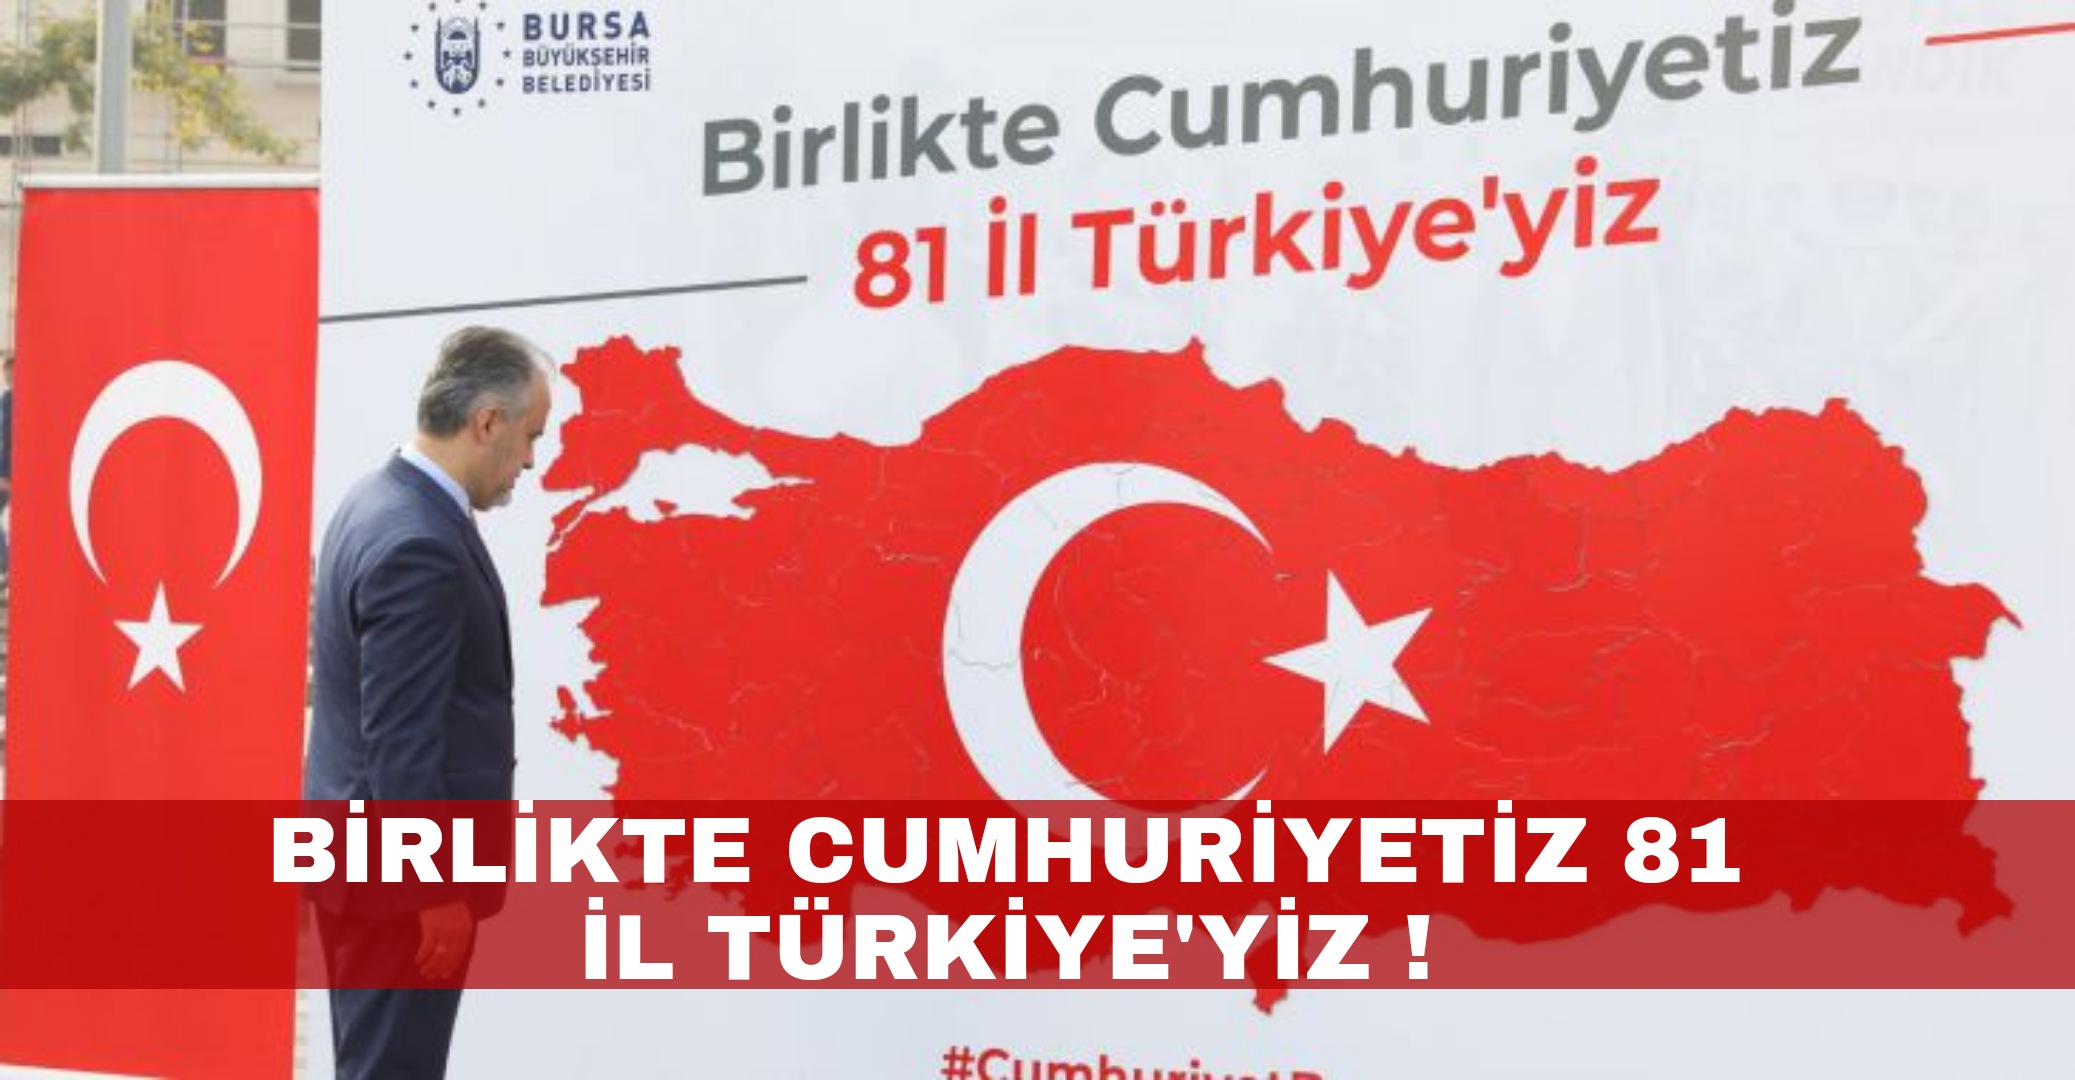 Birlikte cumhuriyetiz, 81 il Türkiye